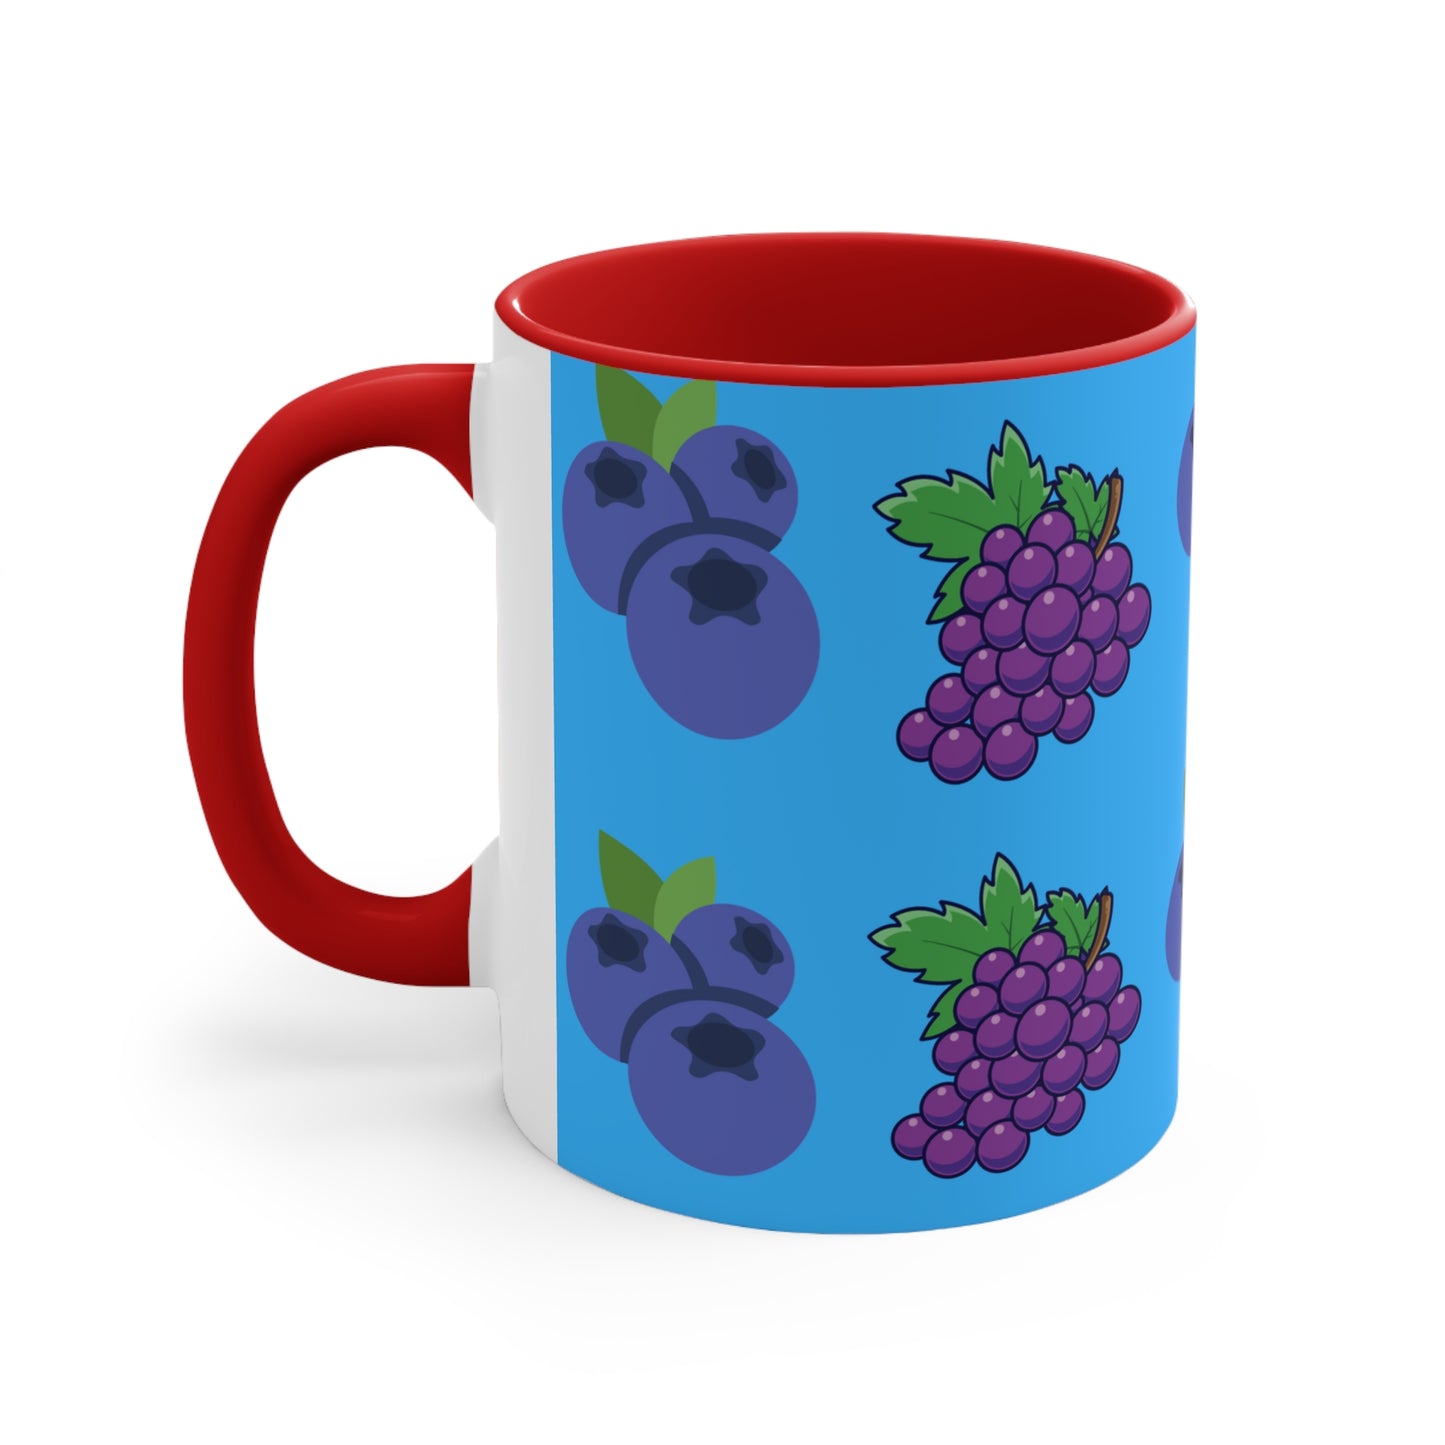 Blueberry and Grape mug